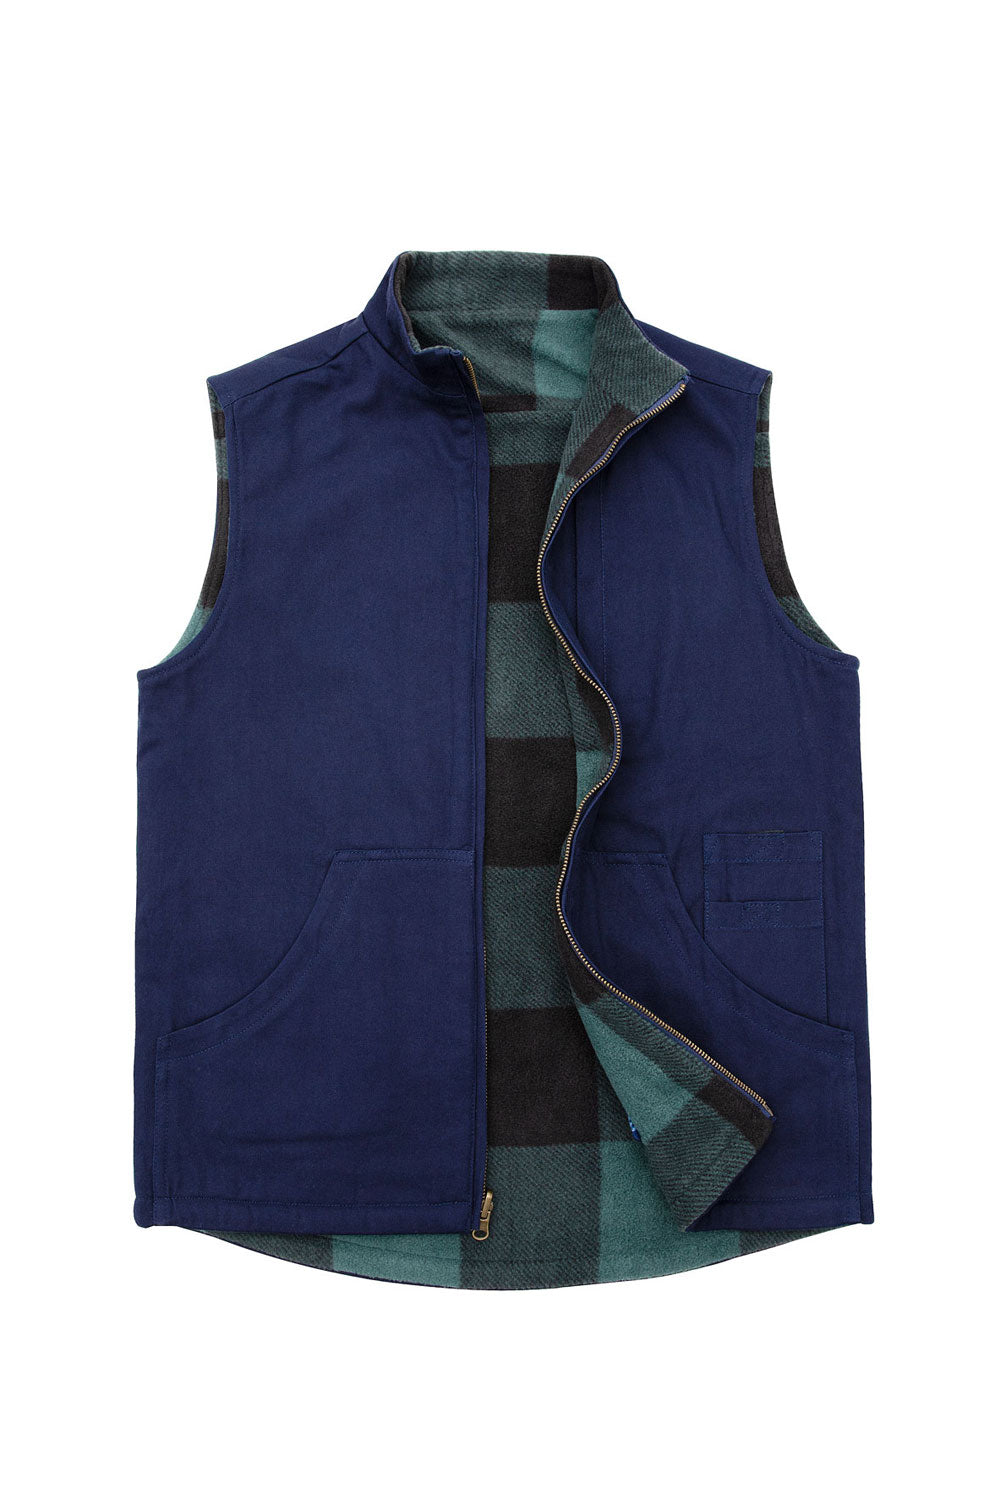 Men's Reversible Vest Plaid Fleece Lined Outdoor Work Travel Vests